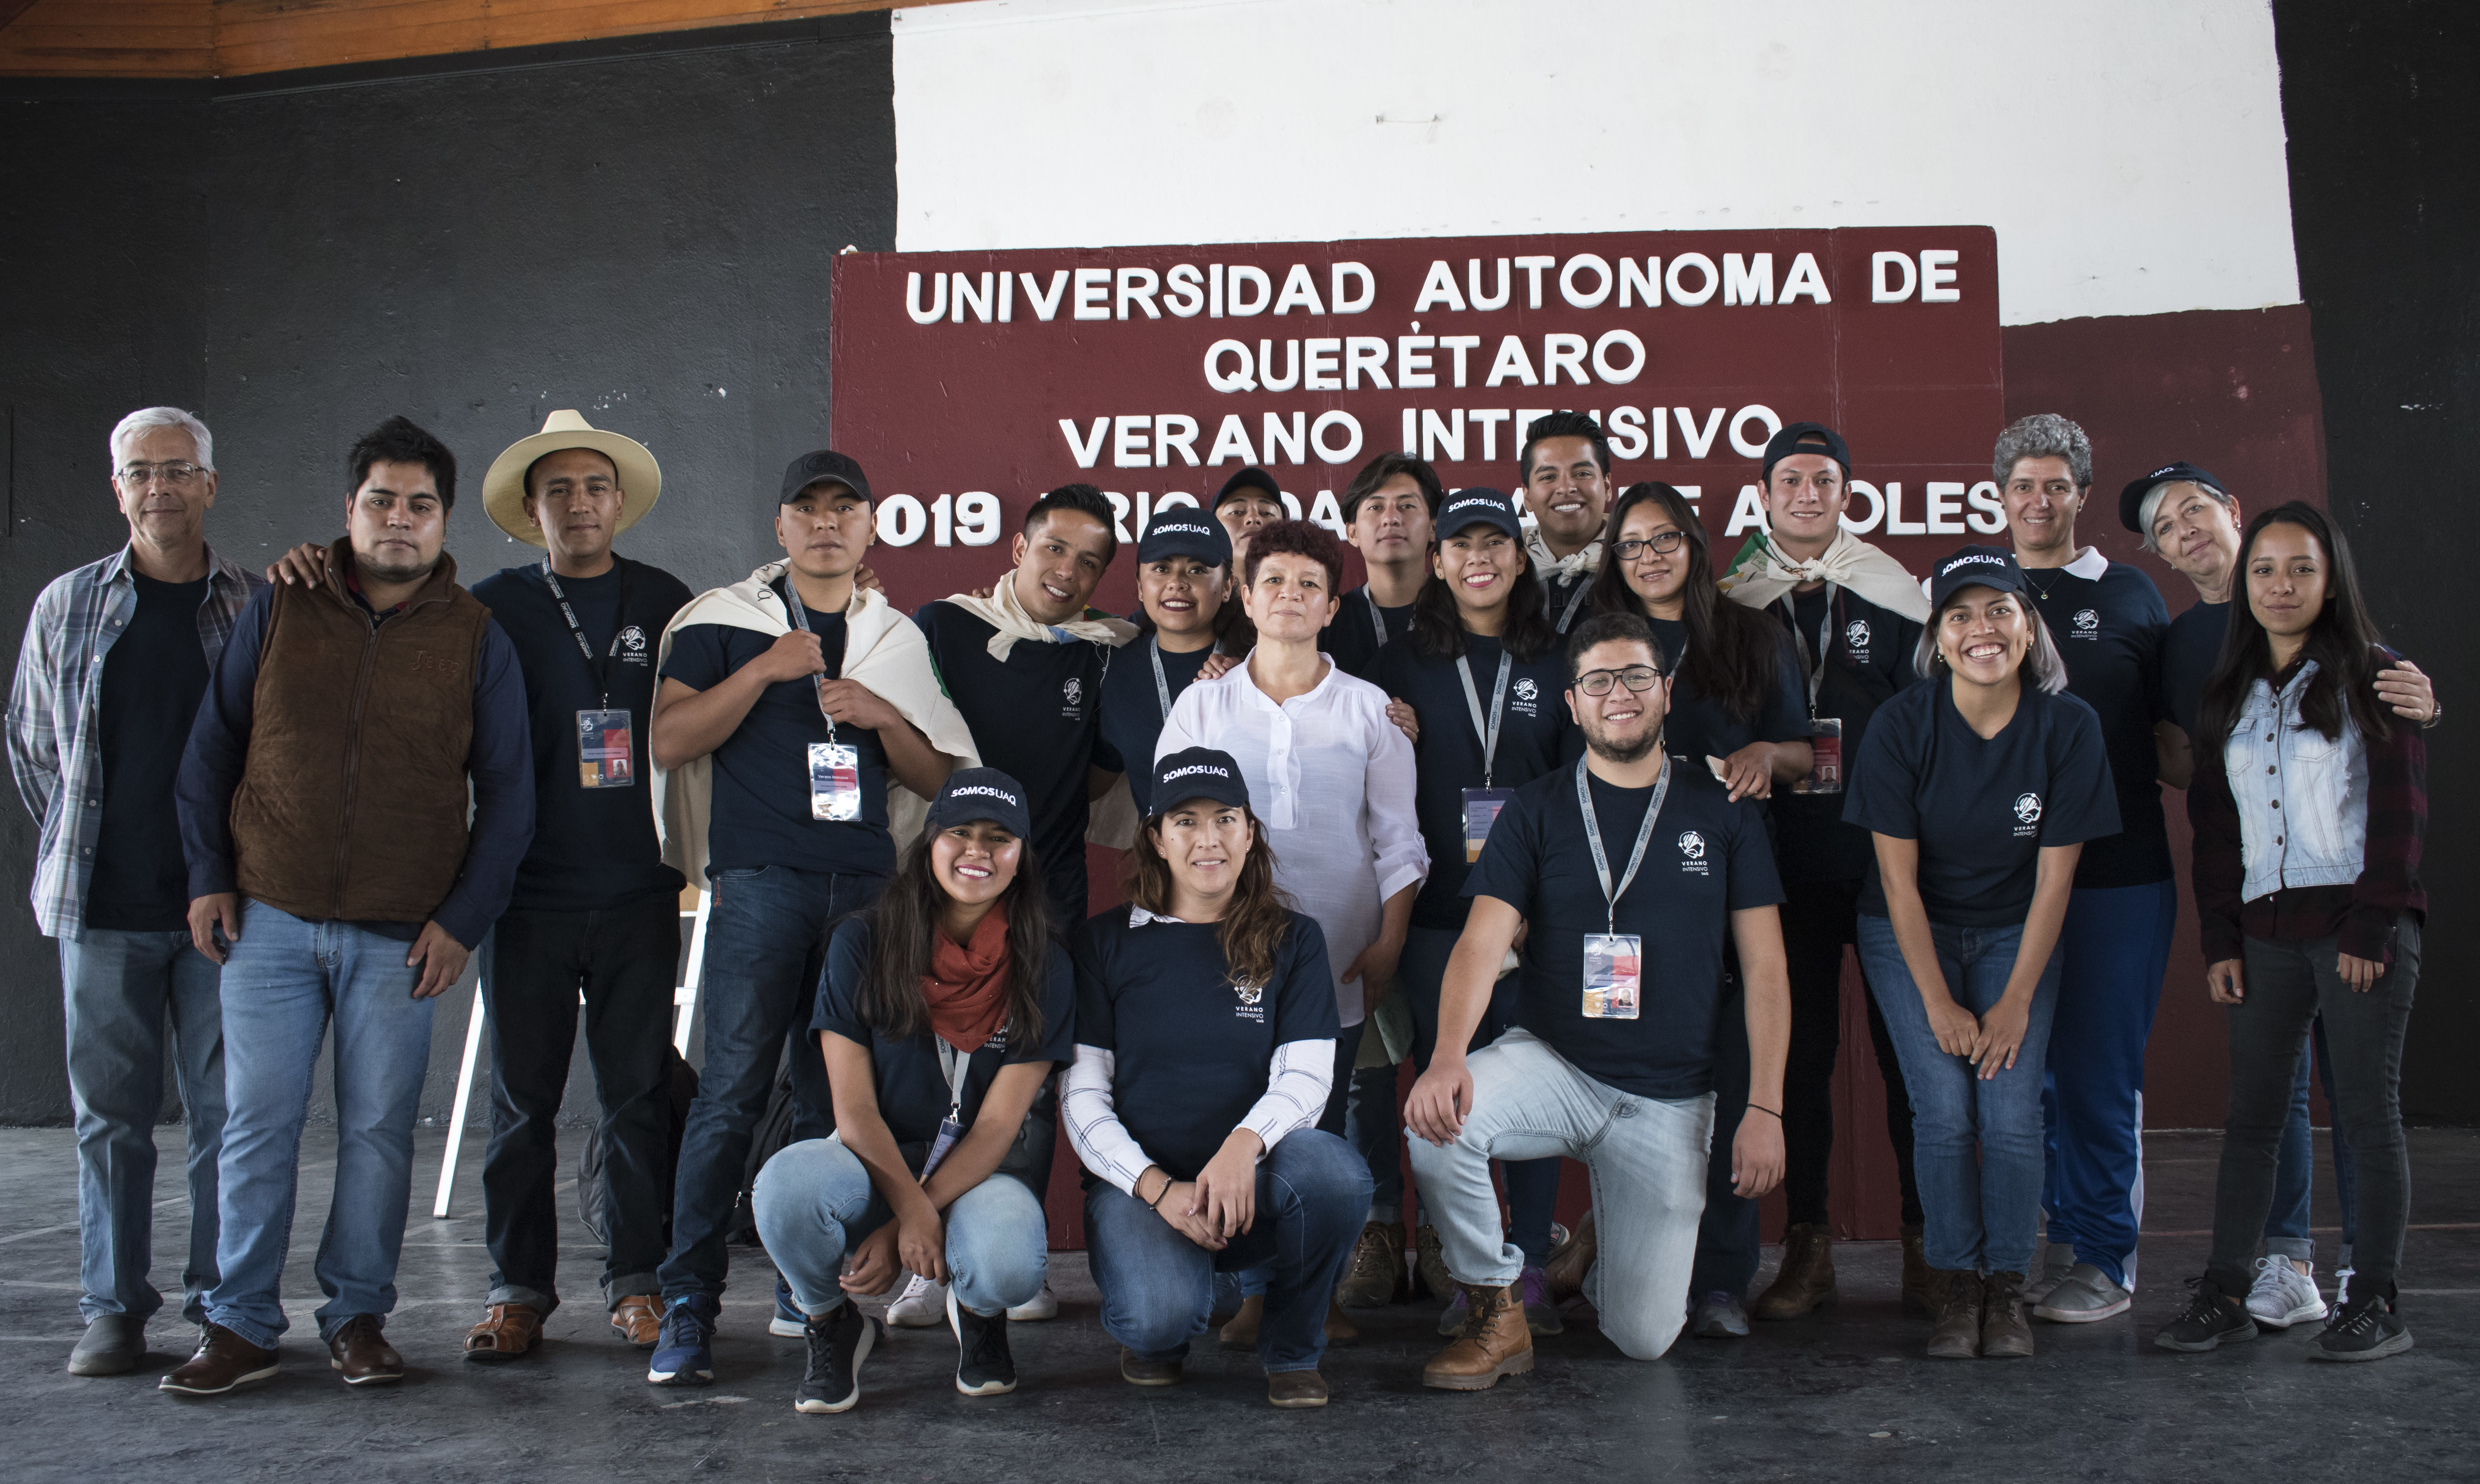  Rectora inicia recorrido en Pinal de Amoles como parte del Verano Intensivo 2019